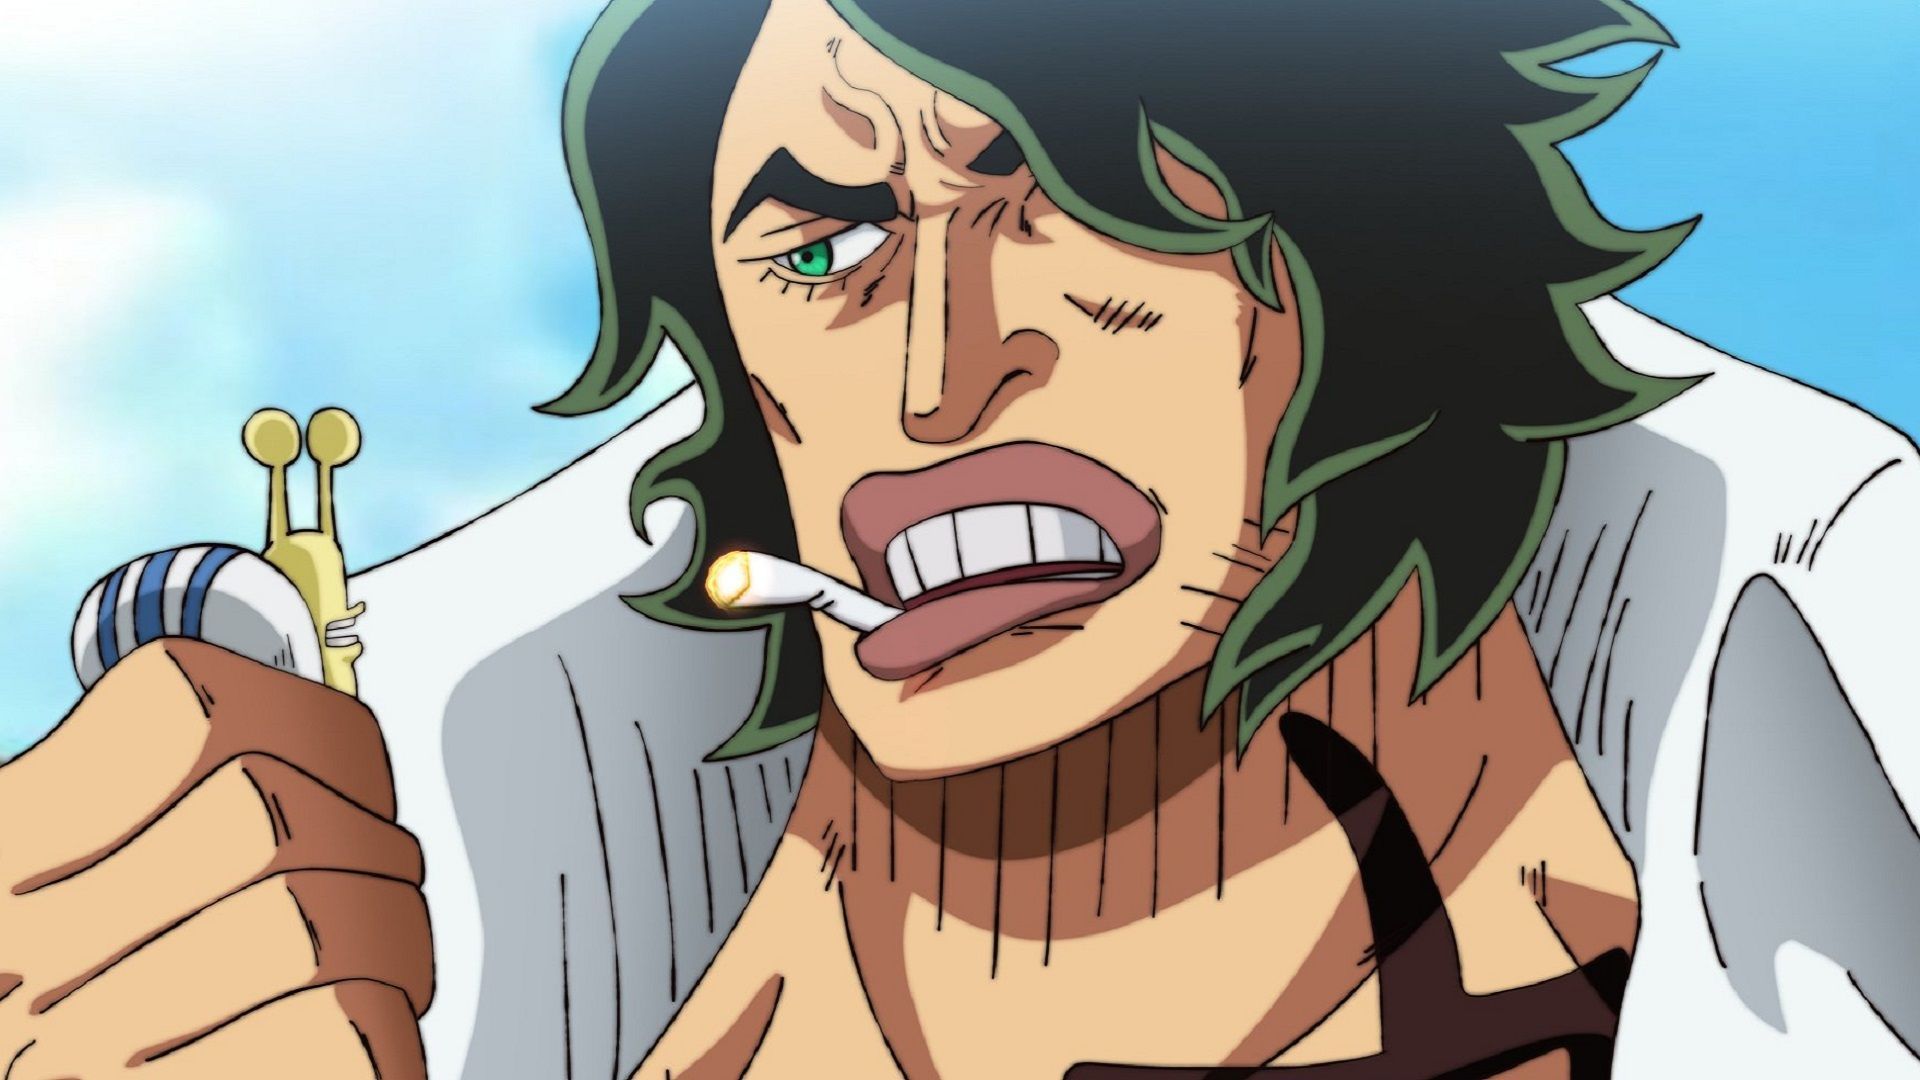 Ryogyoku (Image via Toei Animation, One Piece)